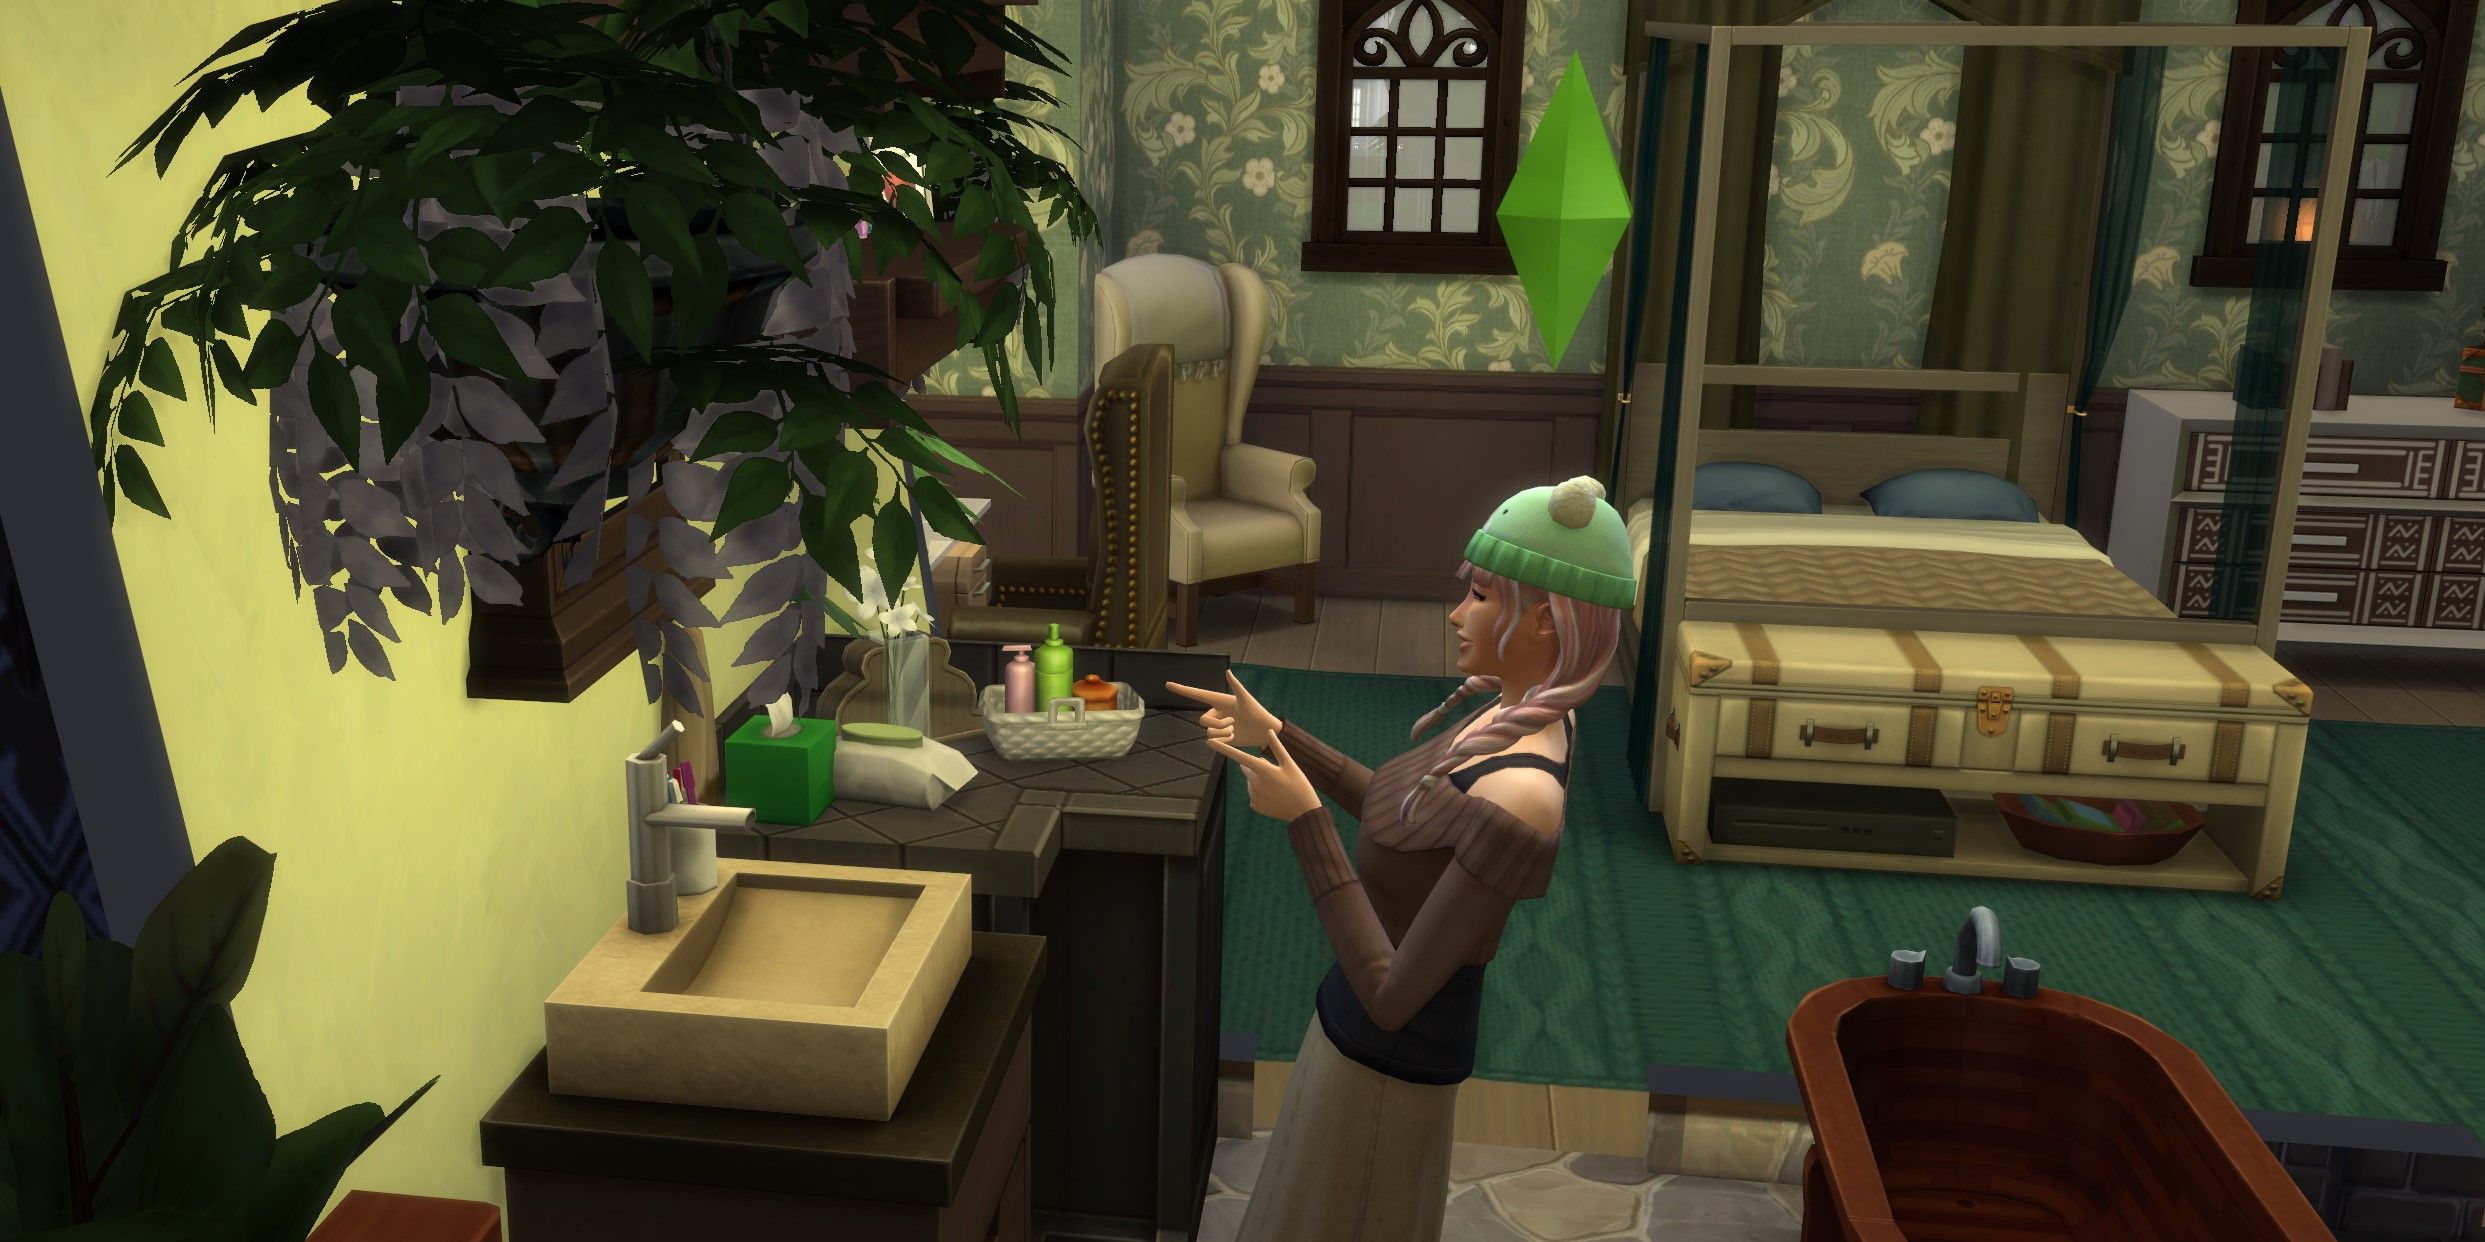 The Sims 4: A sim pointing finger guns at a mirror